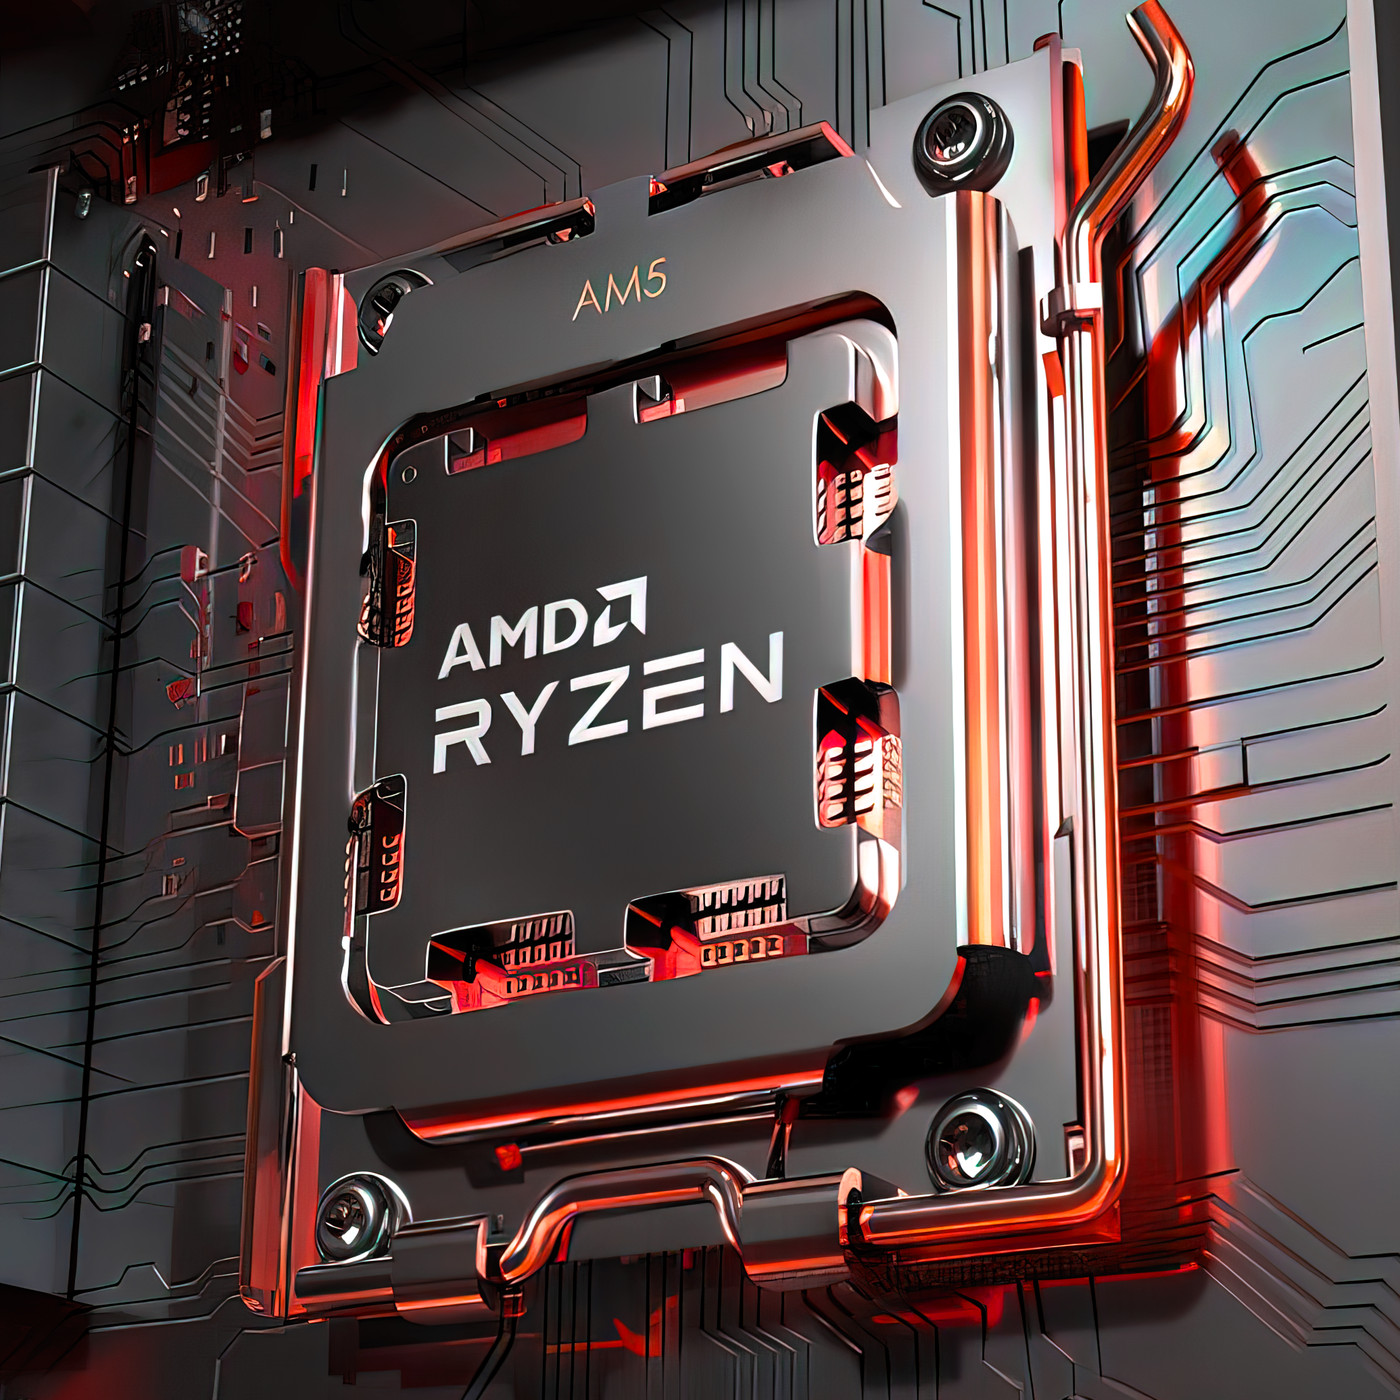 Scheiden reactie afdrijven AMD Ryzen 9 7900X review: AMD is back to beat Intel's 12900K - The Verge